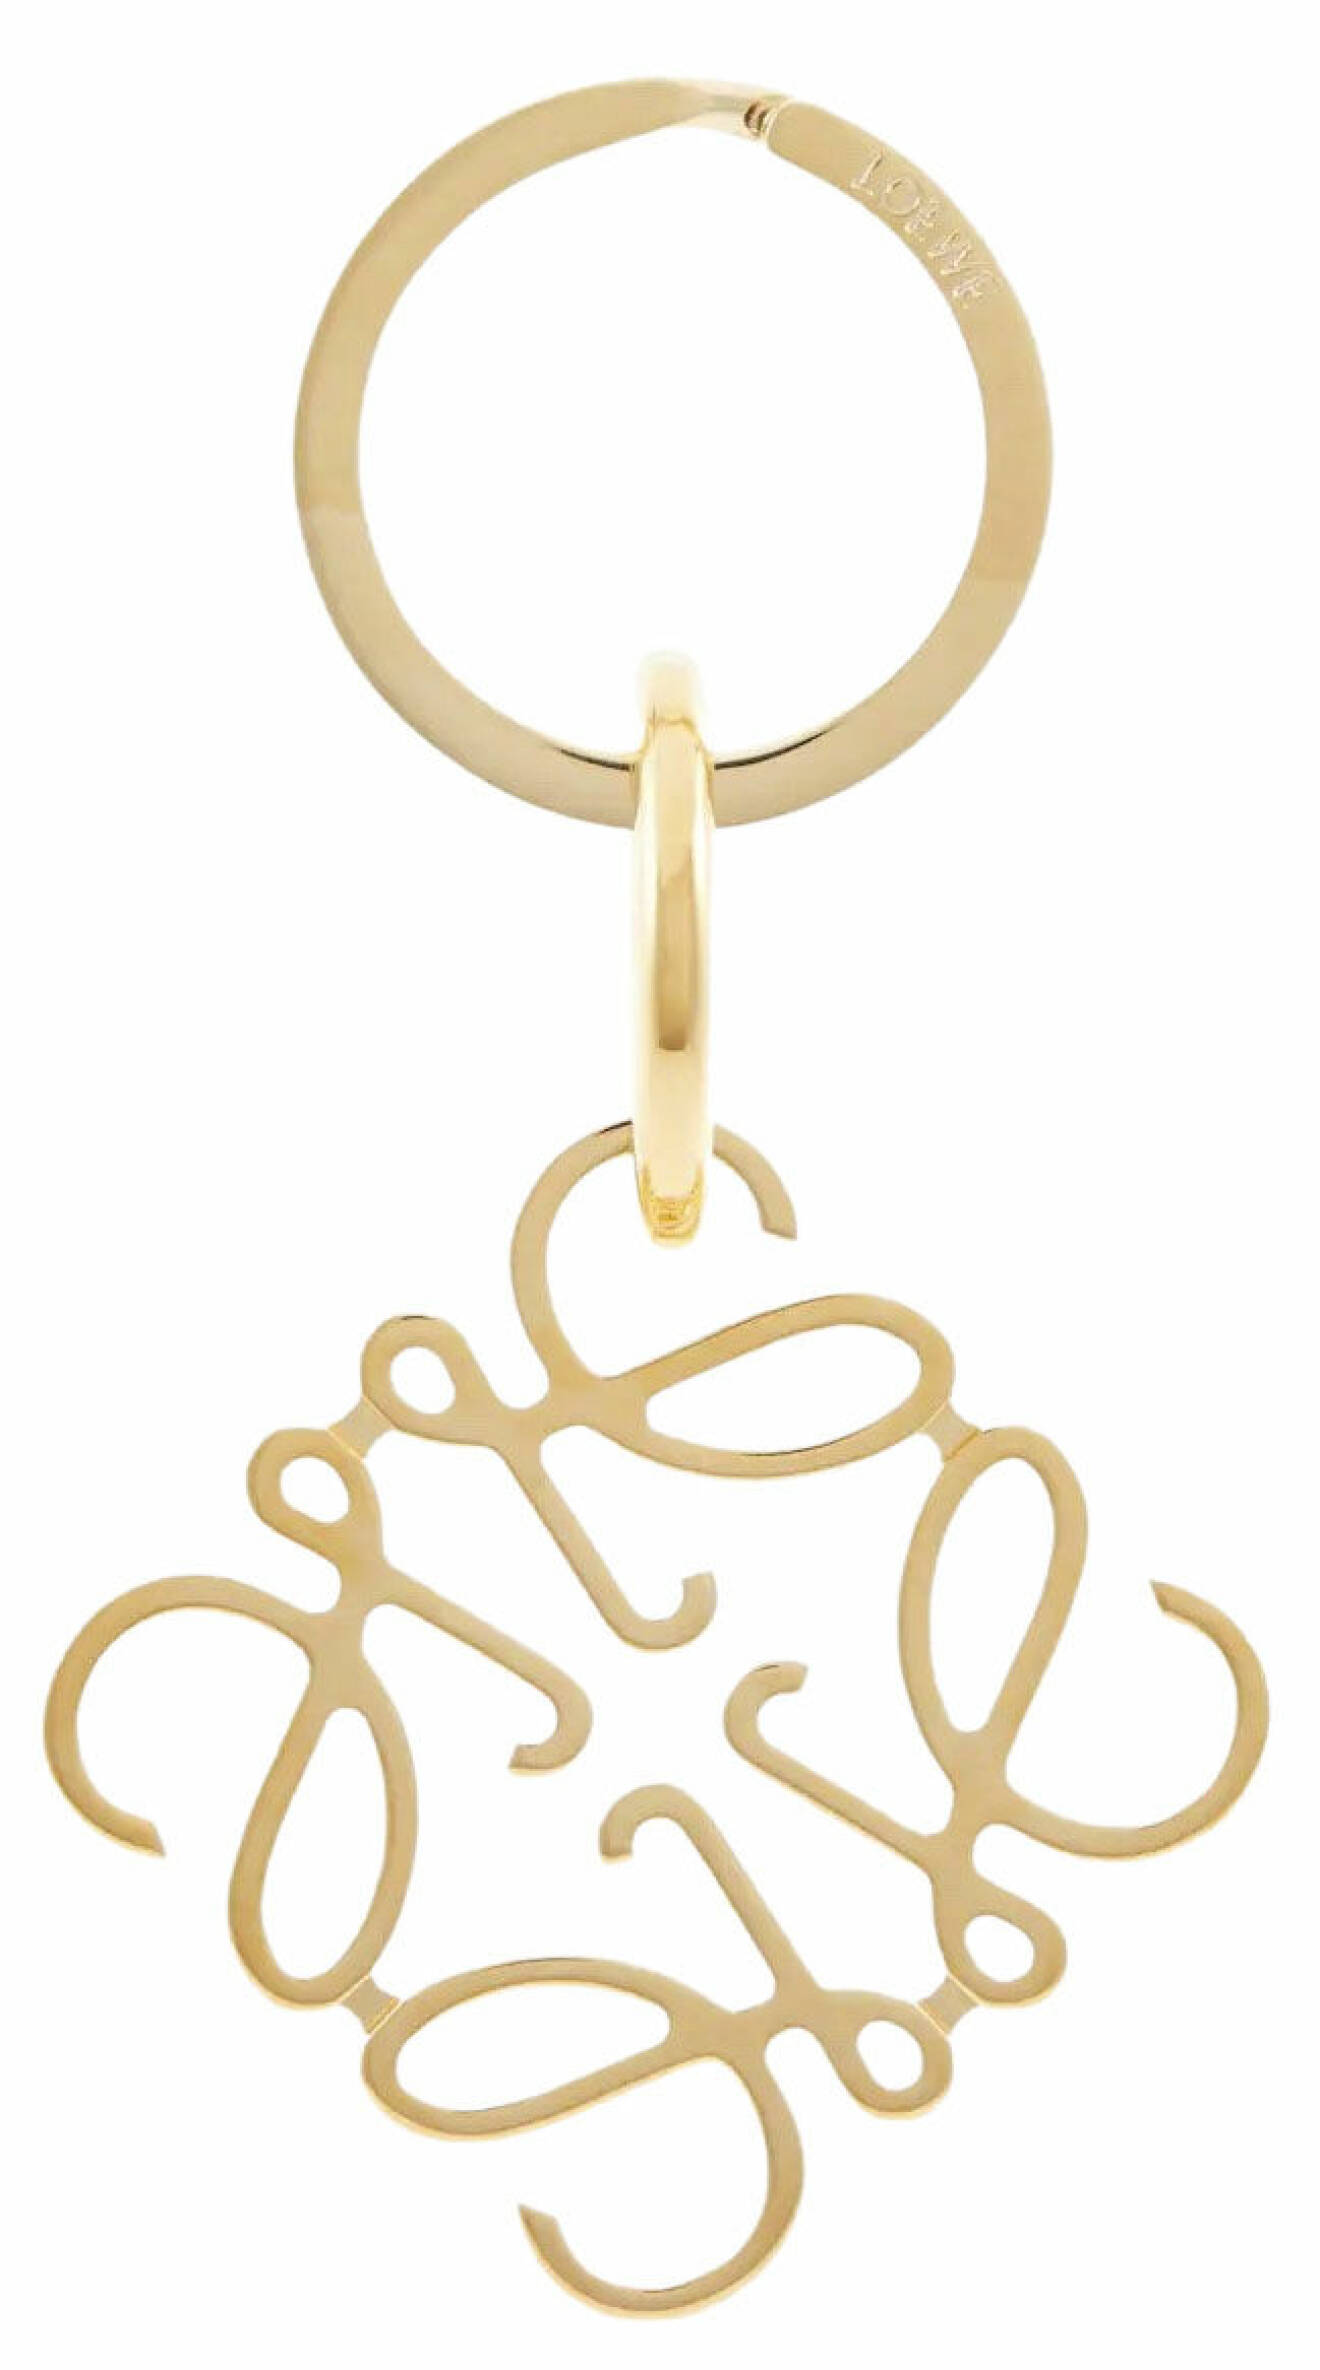 Nyckelring i guld, Loewe